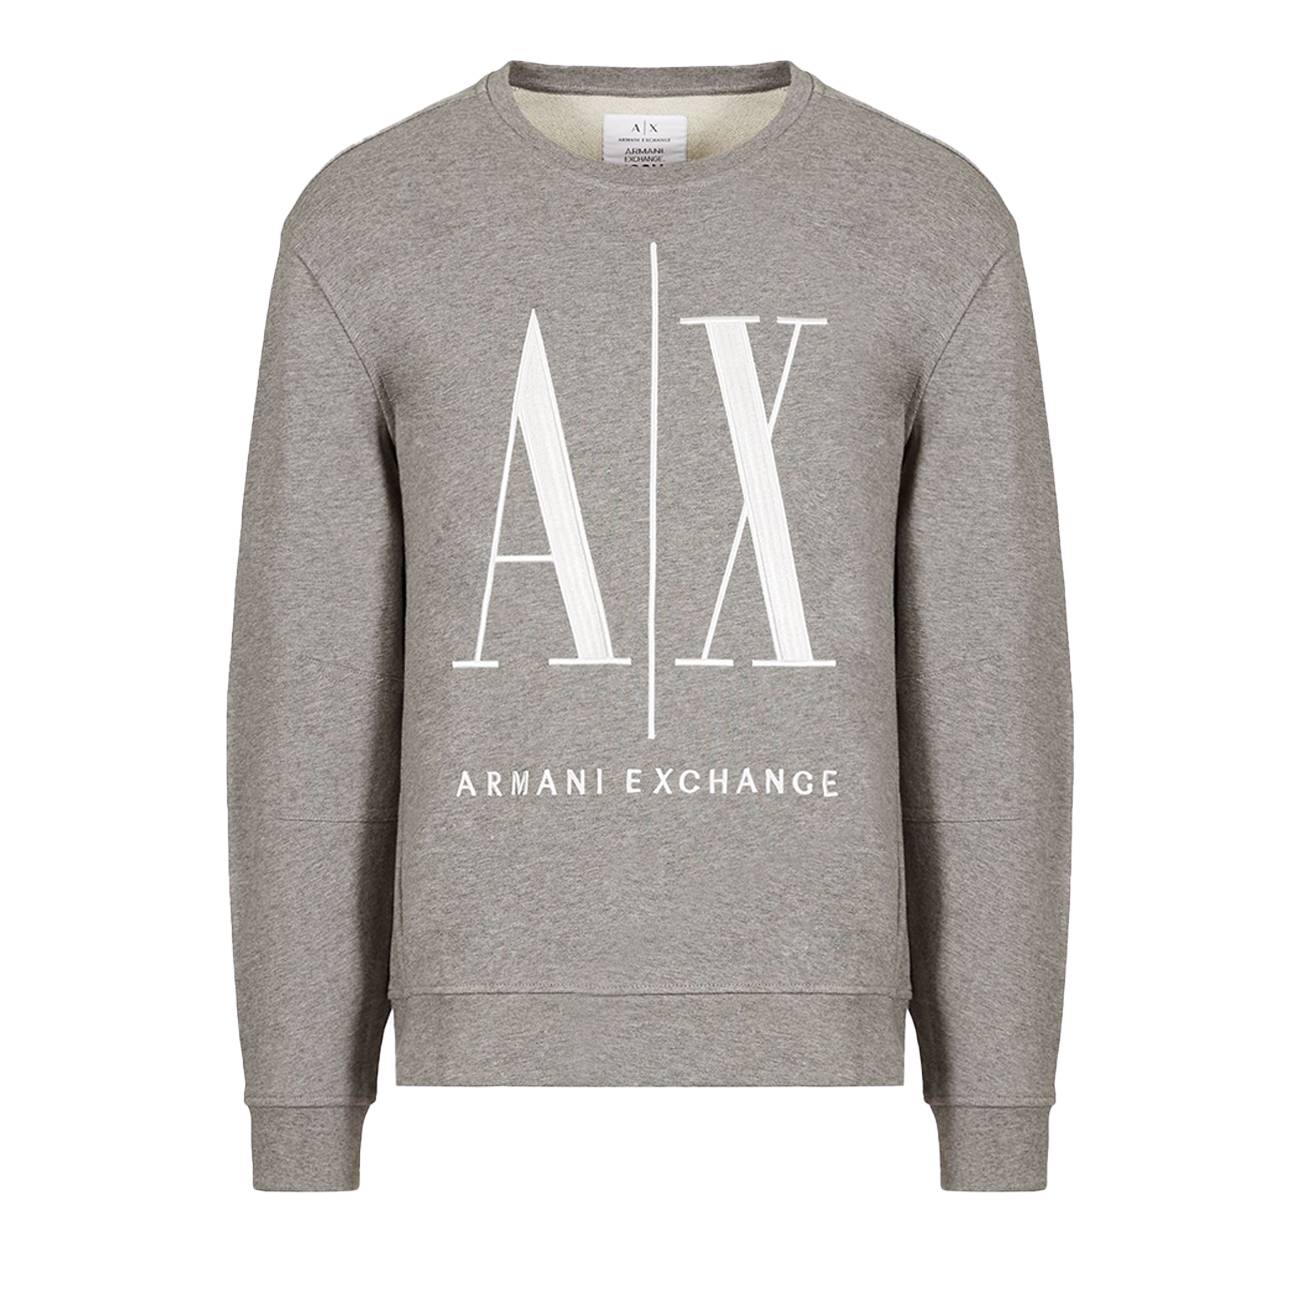 Icon Project hooded sweatshirt with oversized logo XXL Armani Exchange